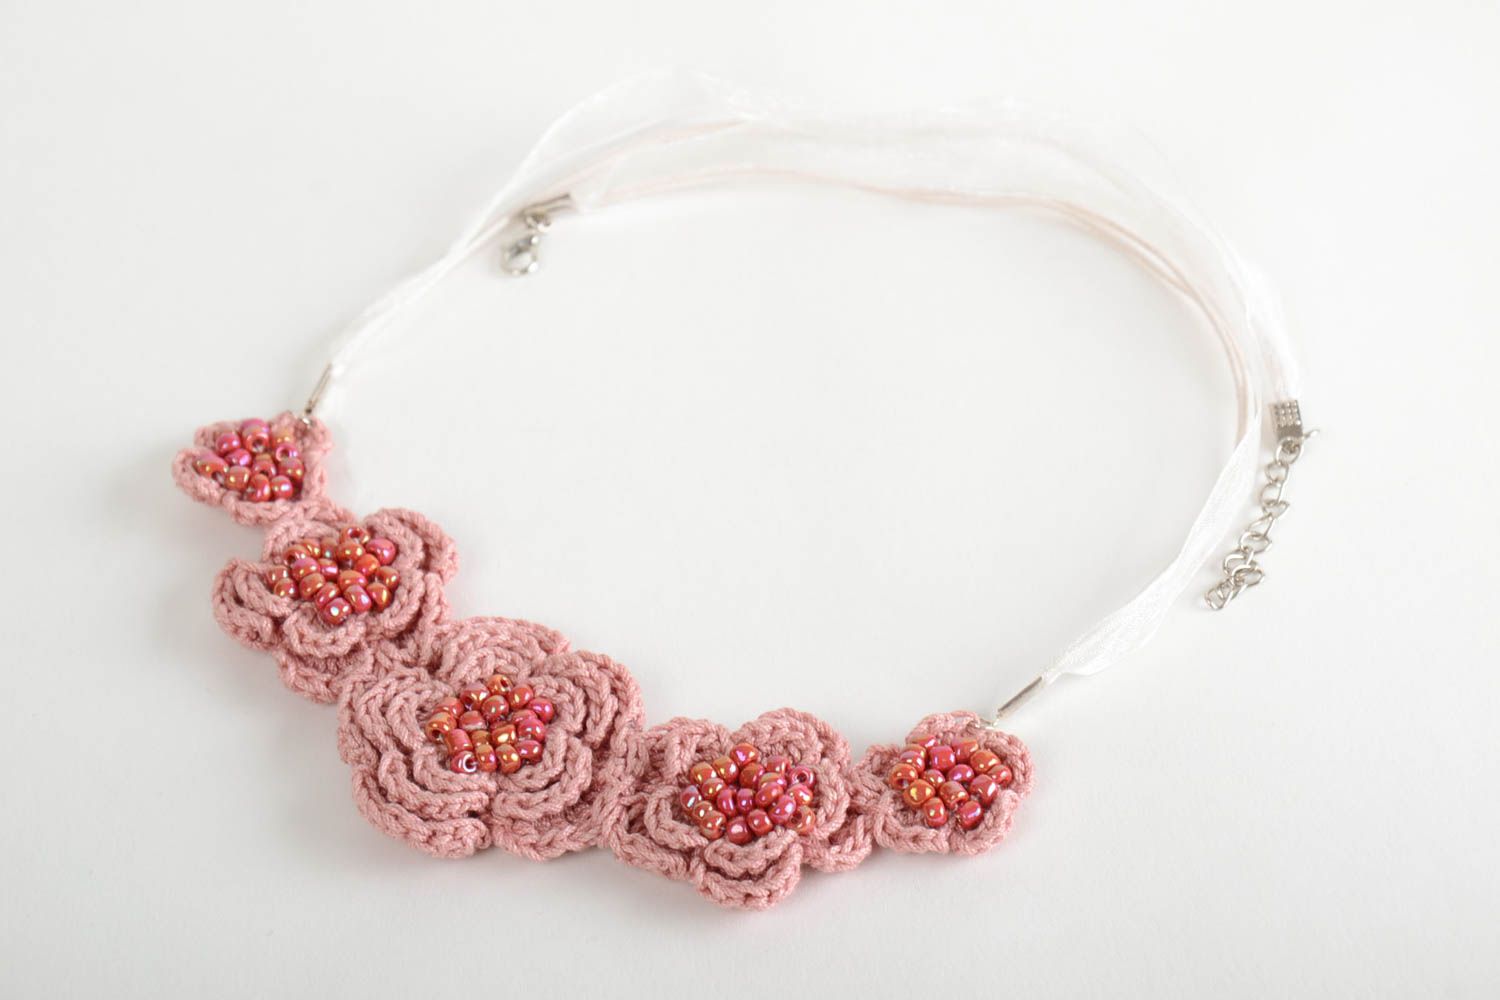 Textil Collier mit Blumen in Rosa gehäkelt mit Glasperlen handmade für Frauen foto 5